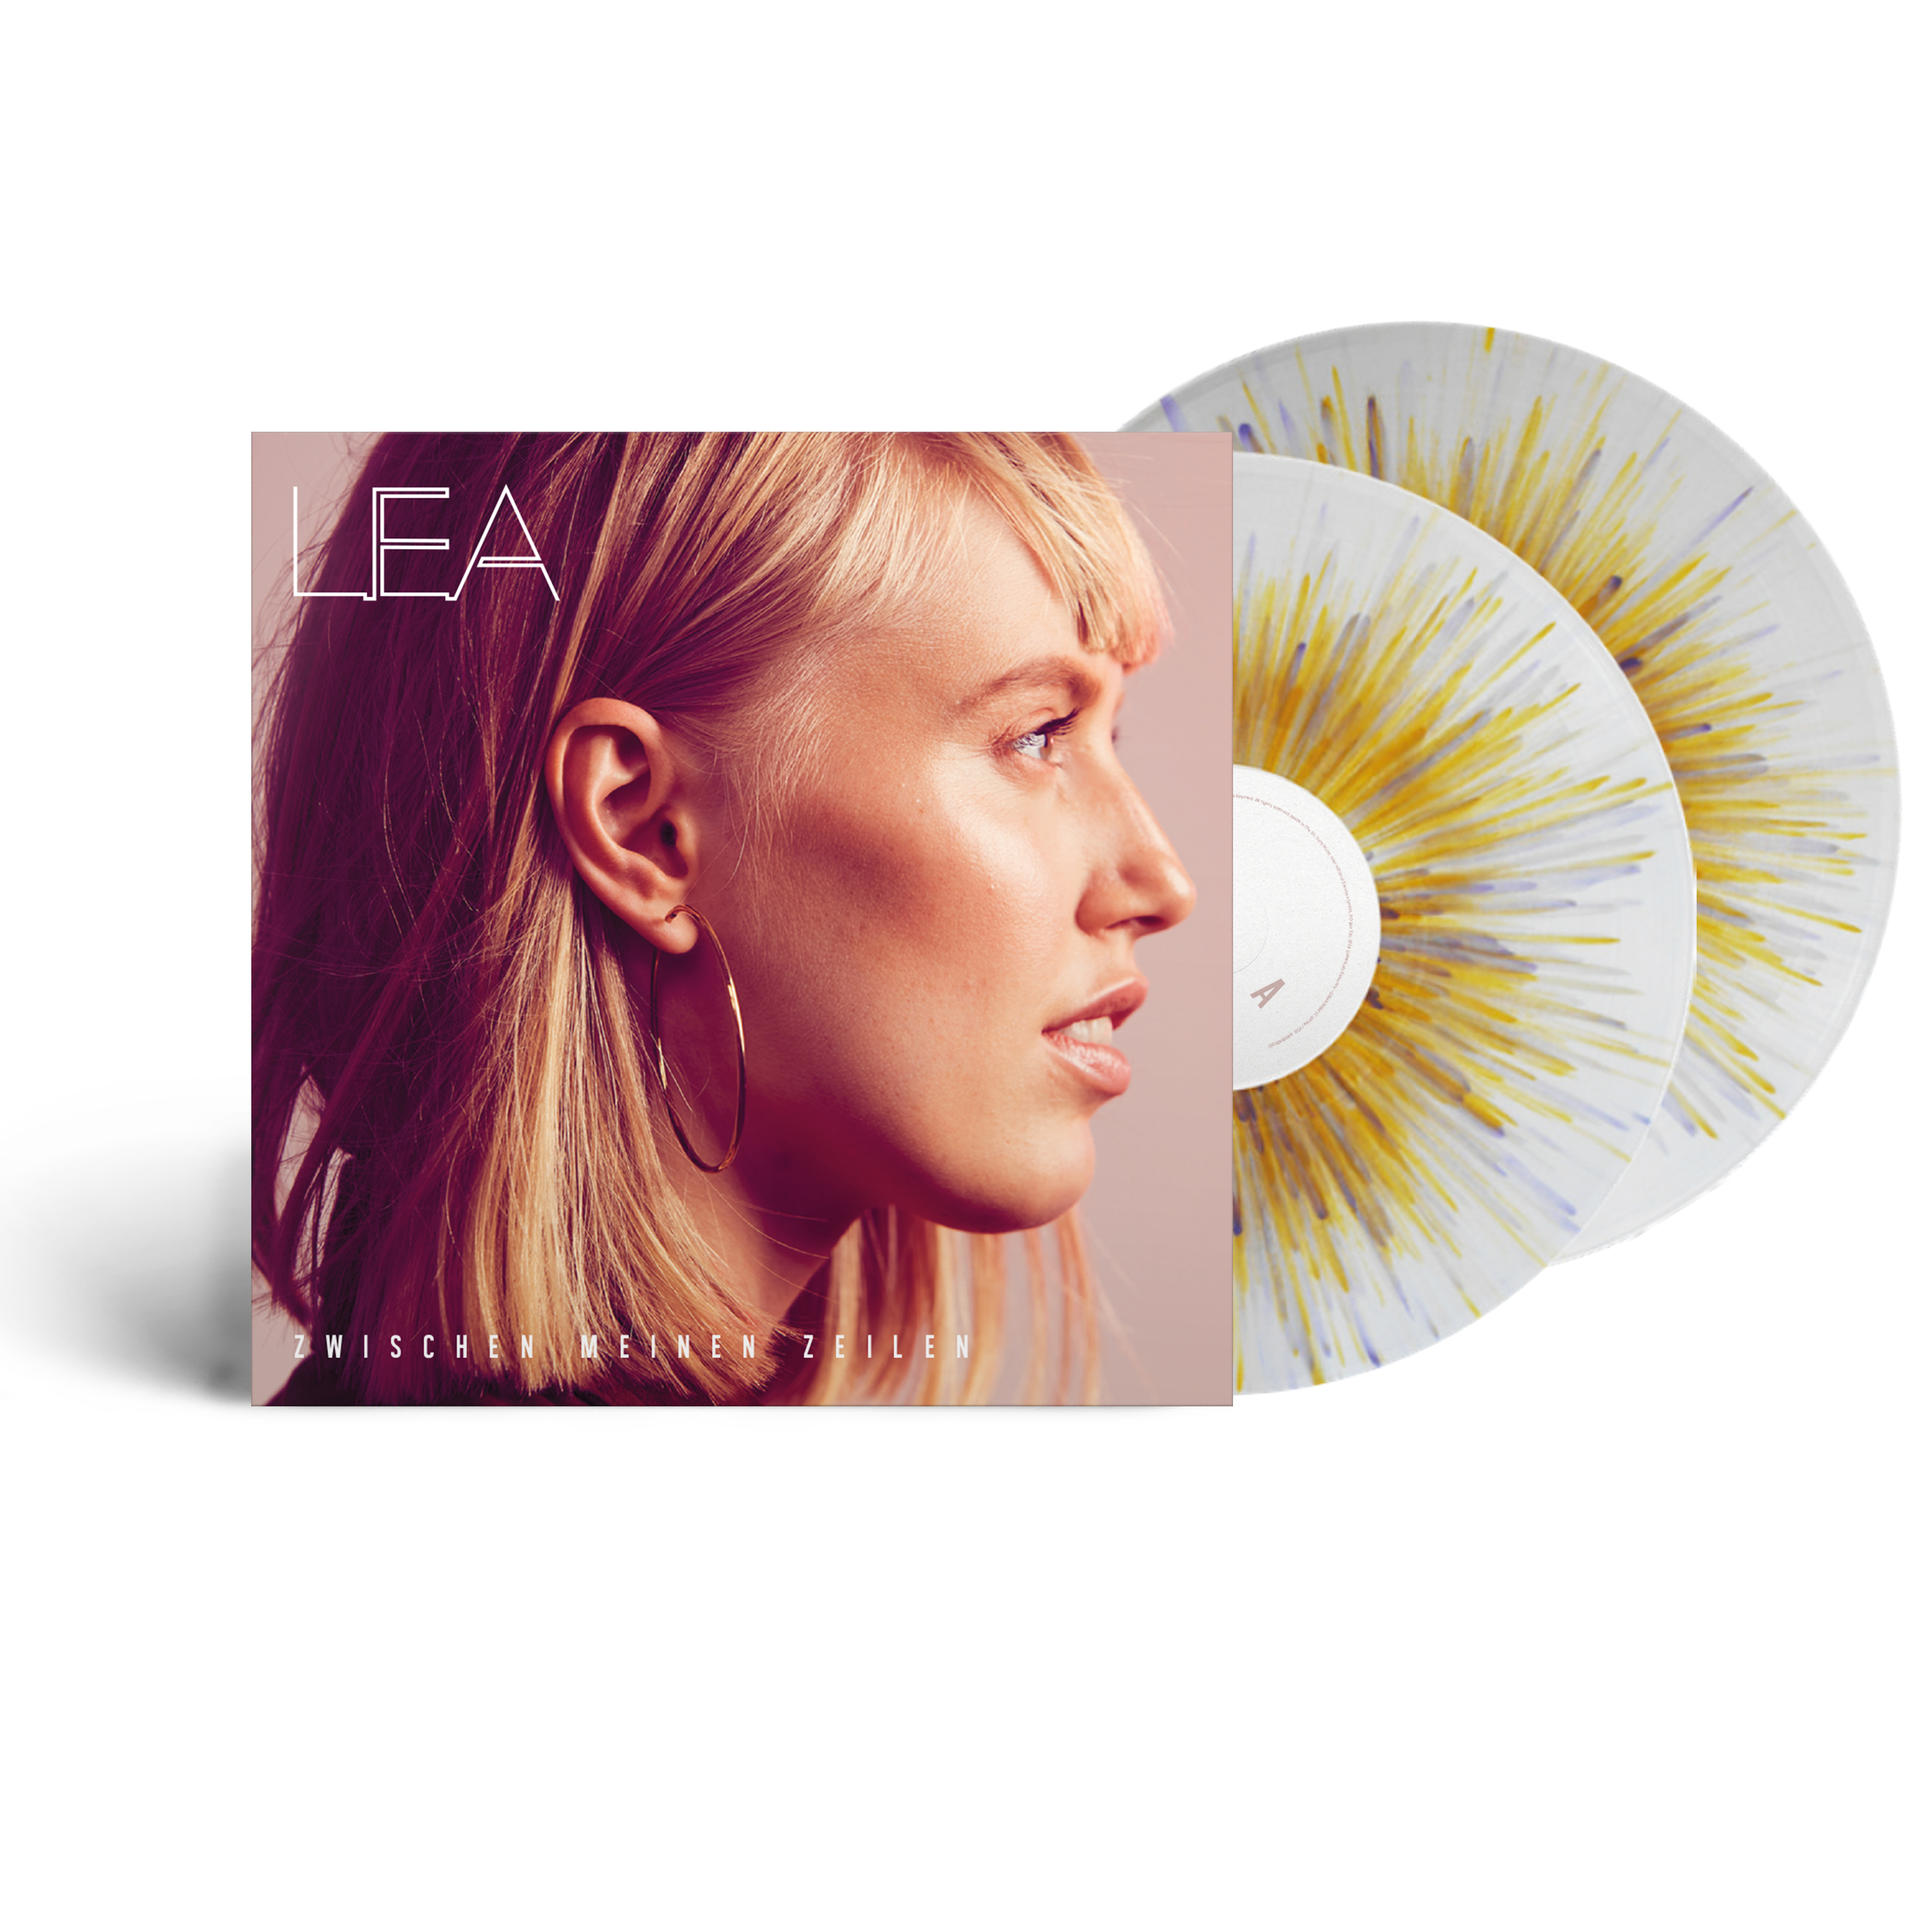 Lea - Zwischen (Vinyl) - Zeilen/splattered vinyl meinen